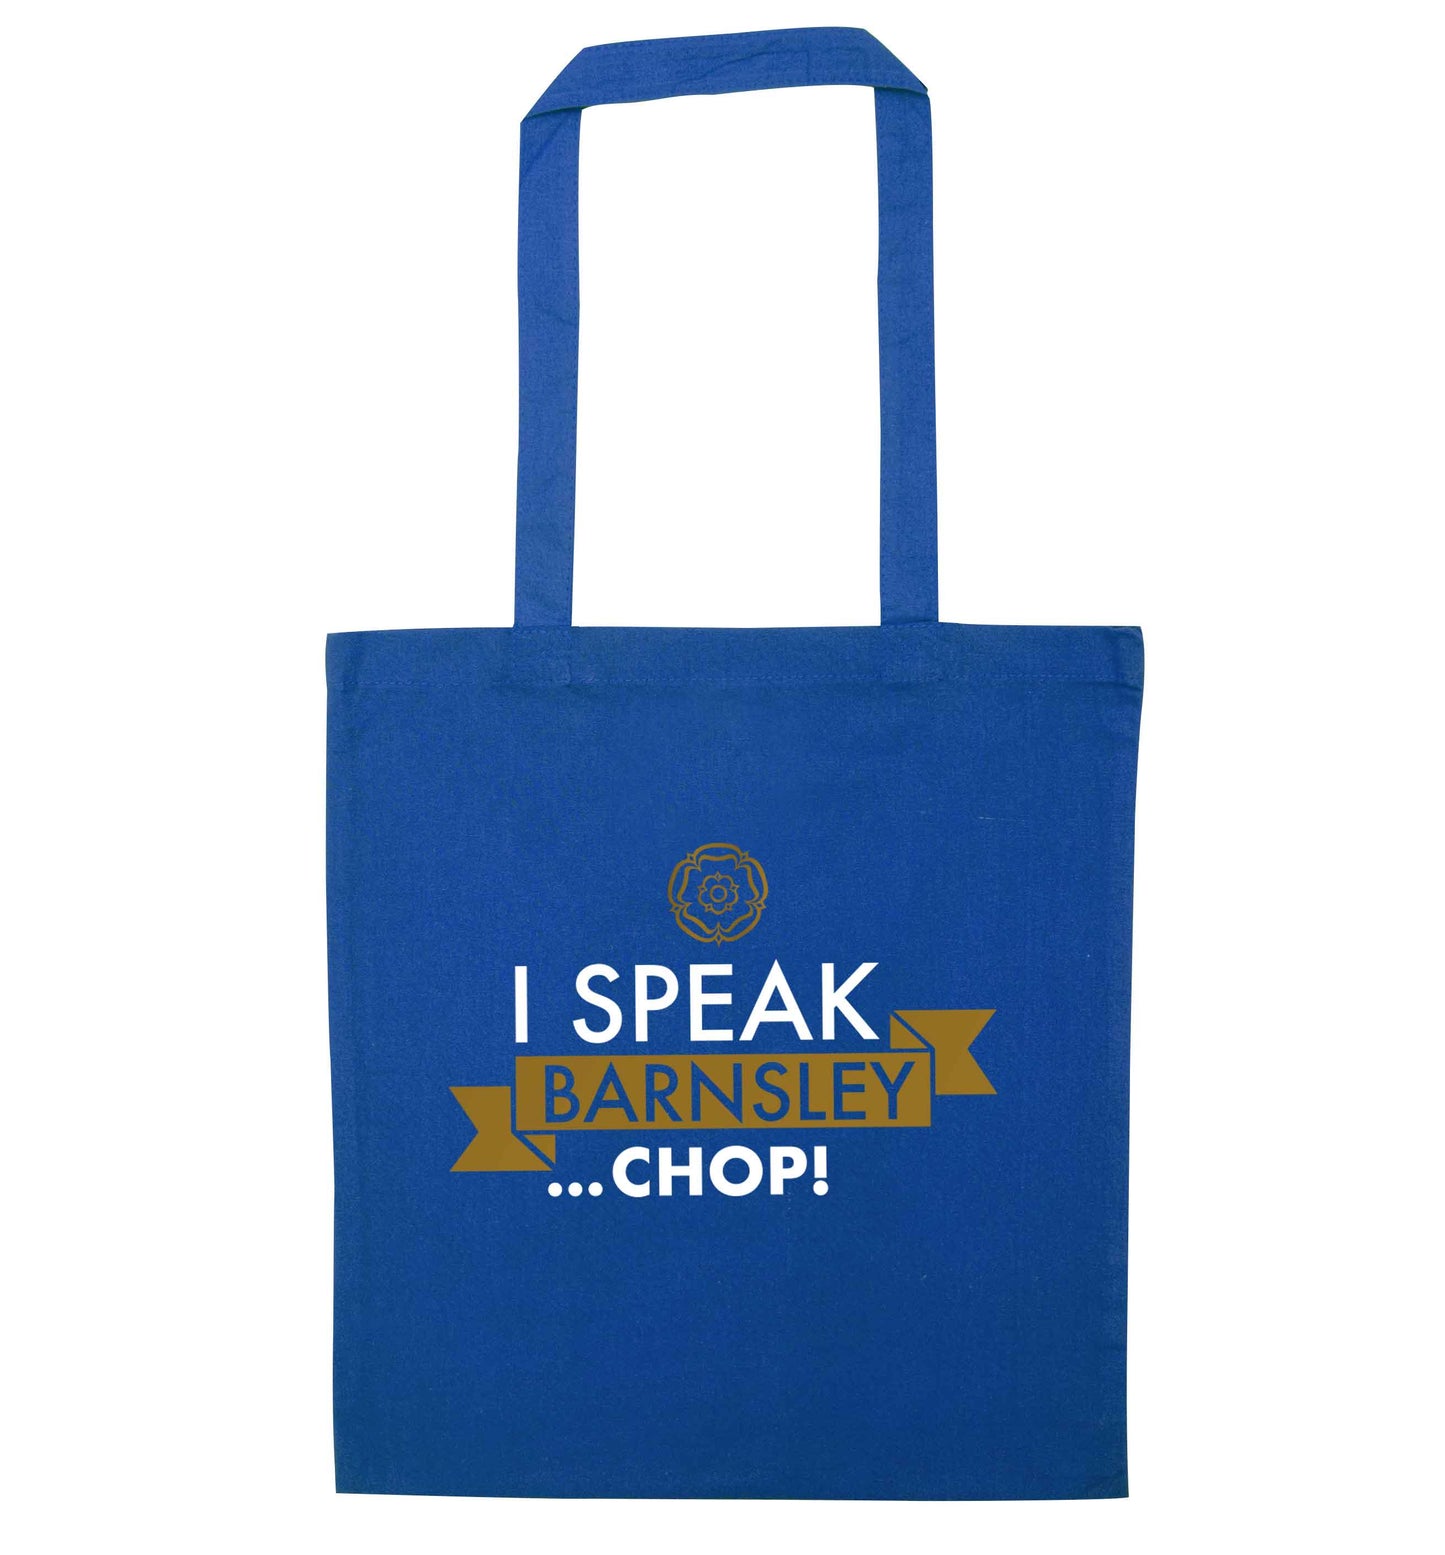 I speak Barnsley...chop! blue tote bag